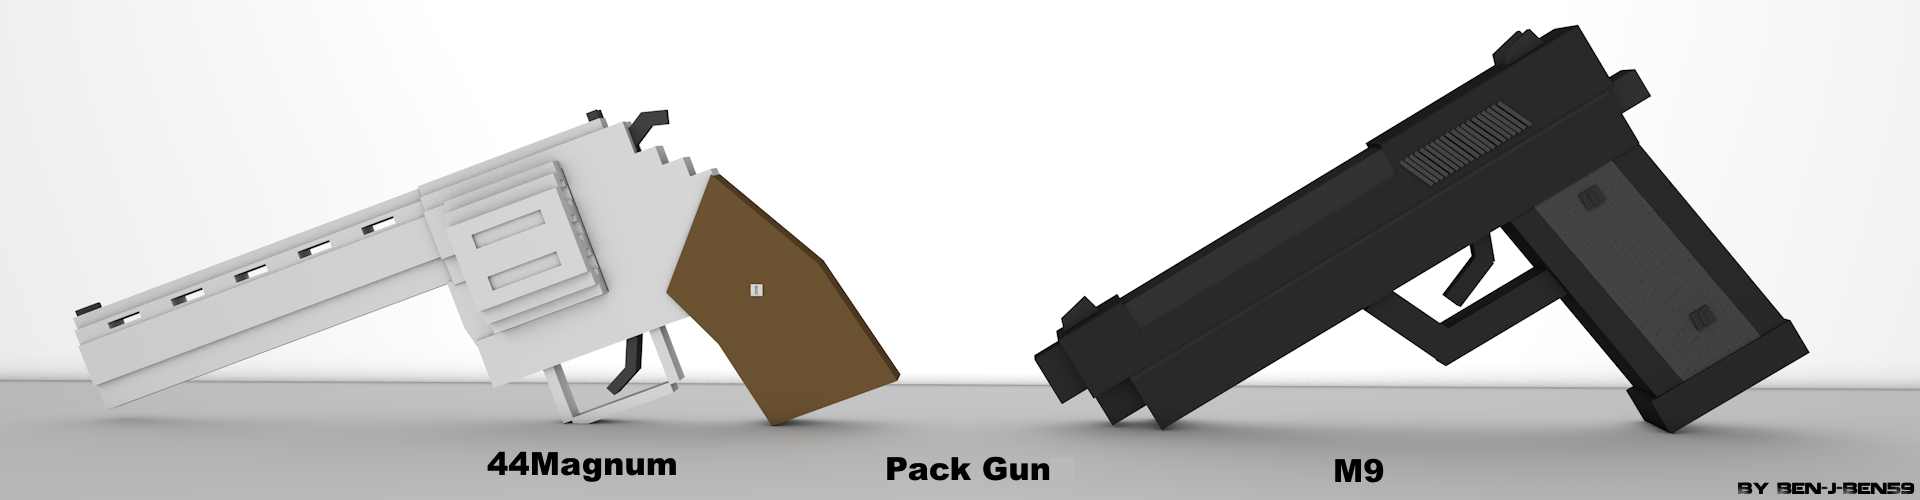 Pack Gun.png